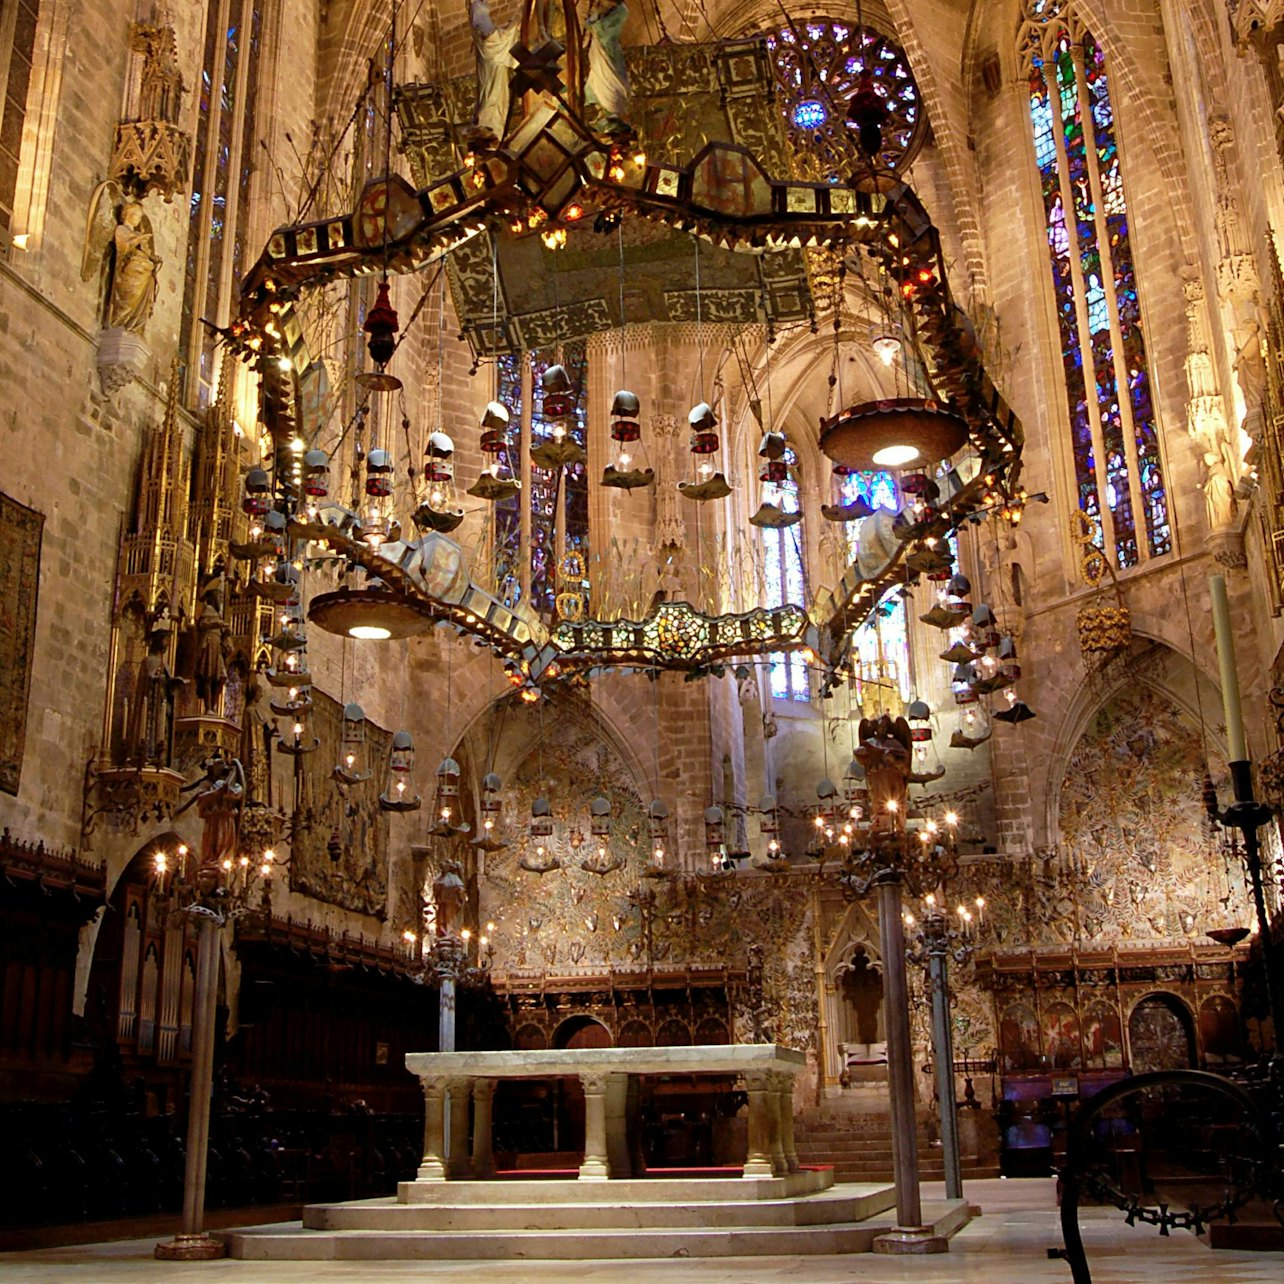 Mallorca Cathedral - Accommodations in Palma de Mallorca